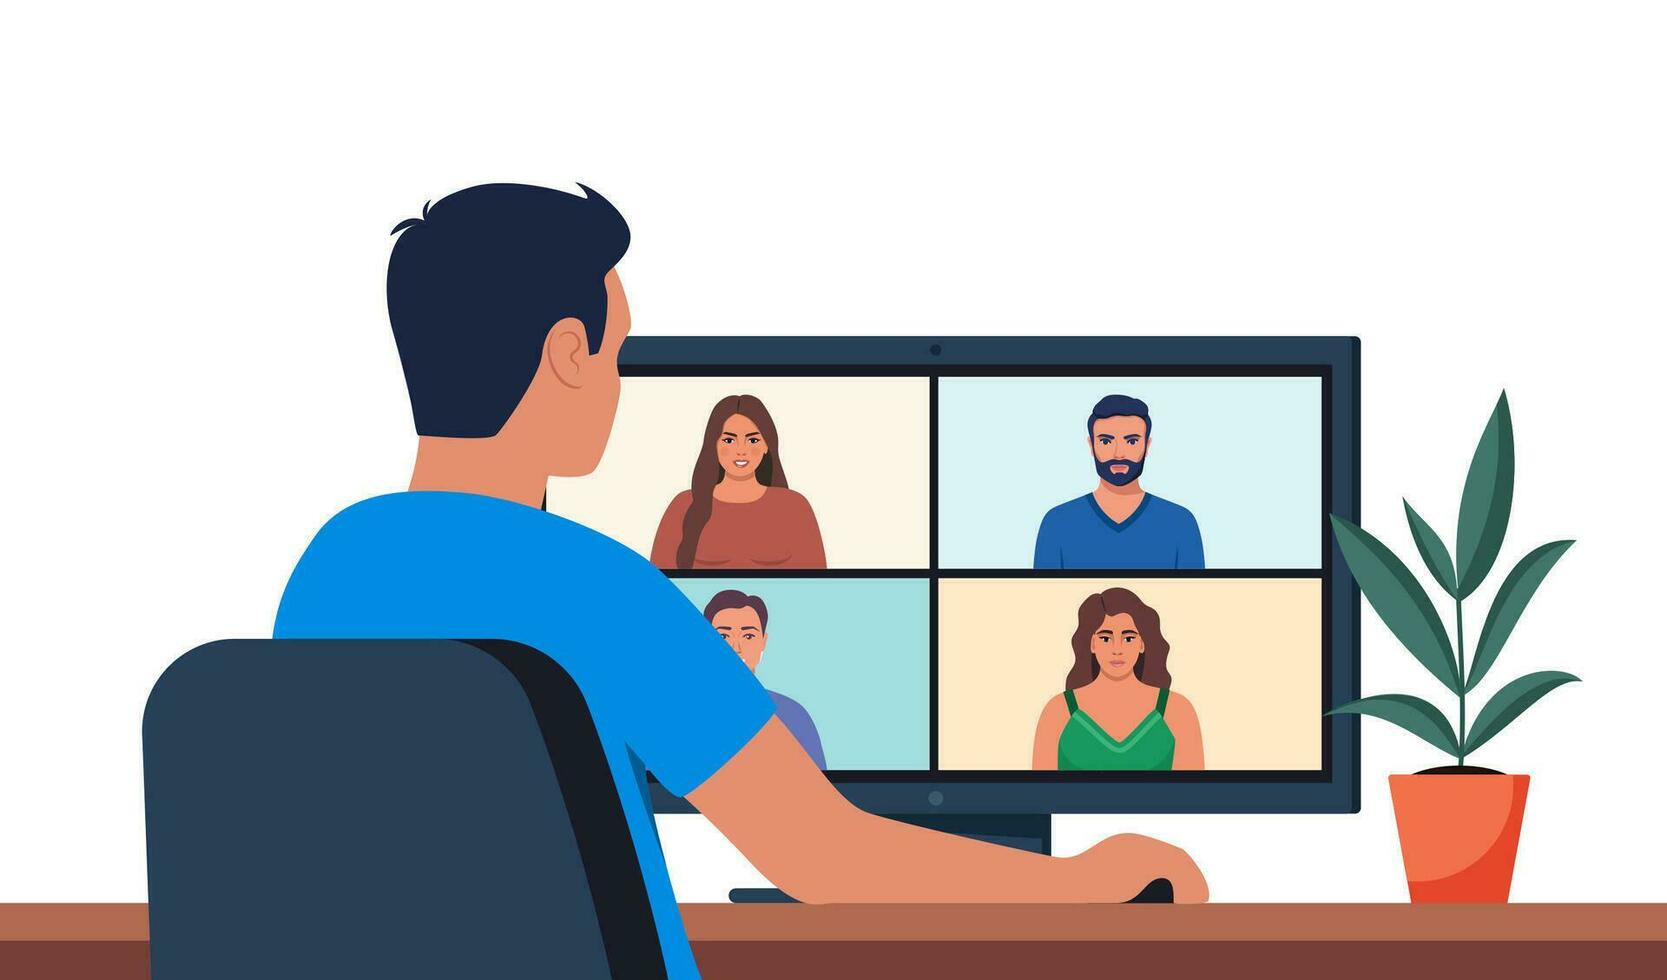 arbetstagare använder sig av dator för kollektiv virtuell möte och grupp video konferens. man på skrivbordet chattar med vänner uppkopplad. vektor illustration.